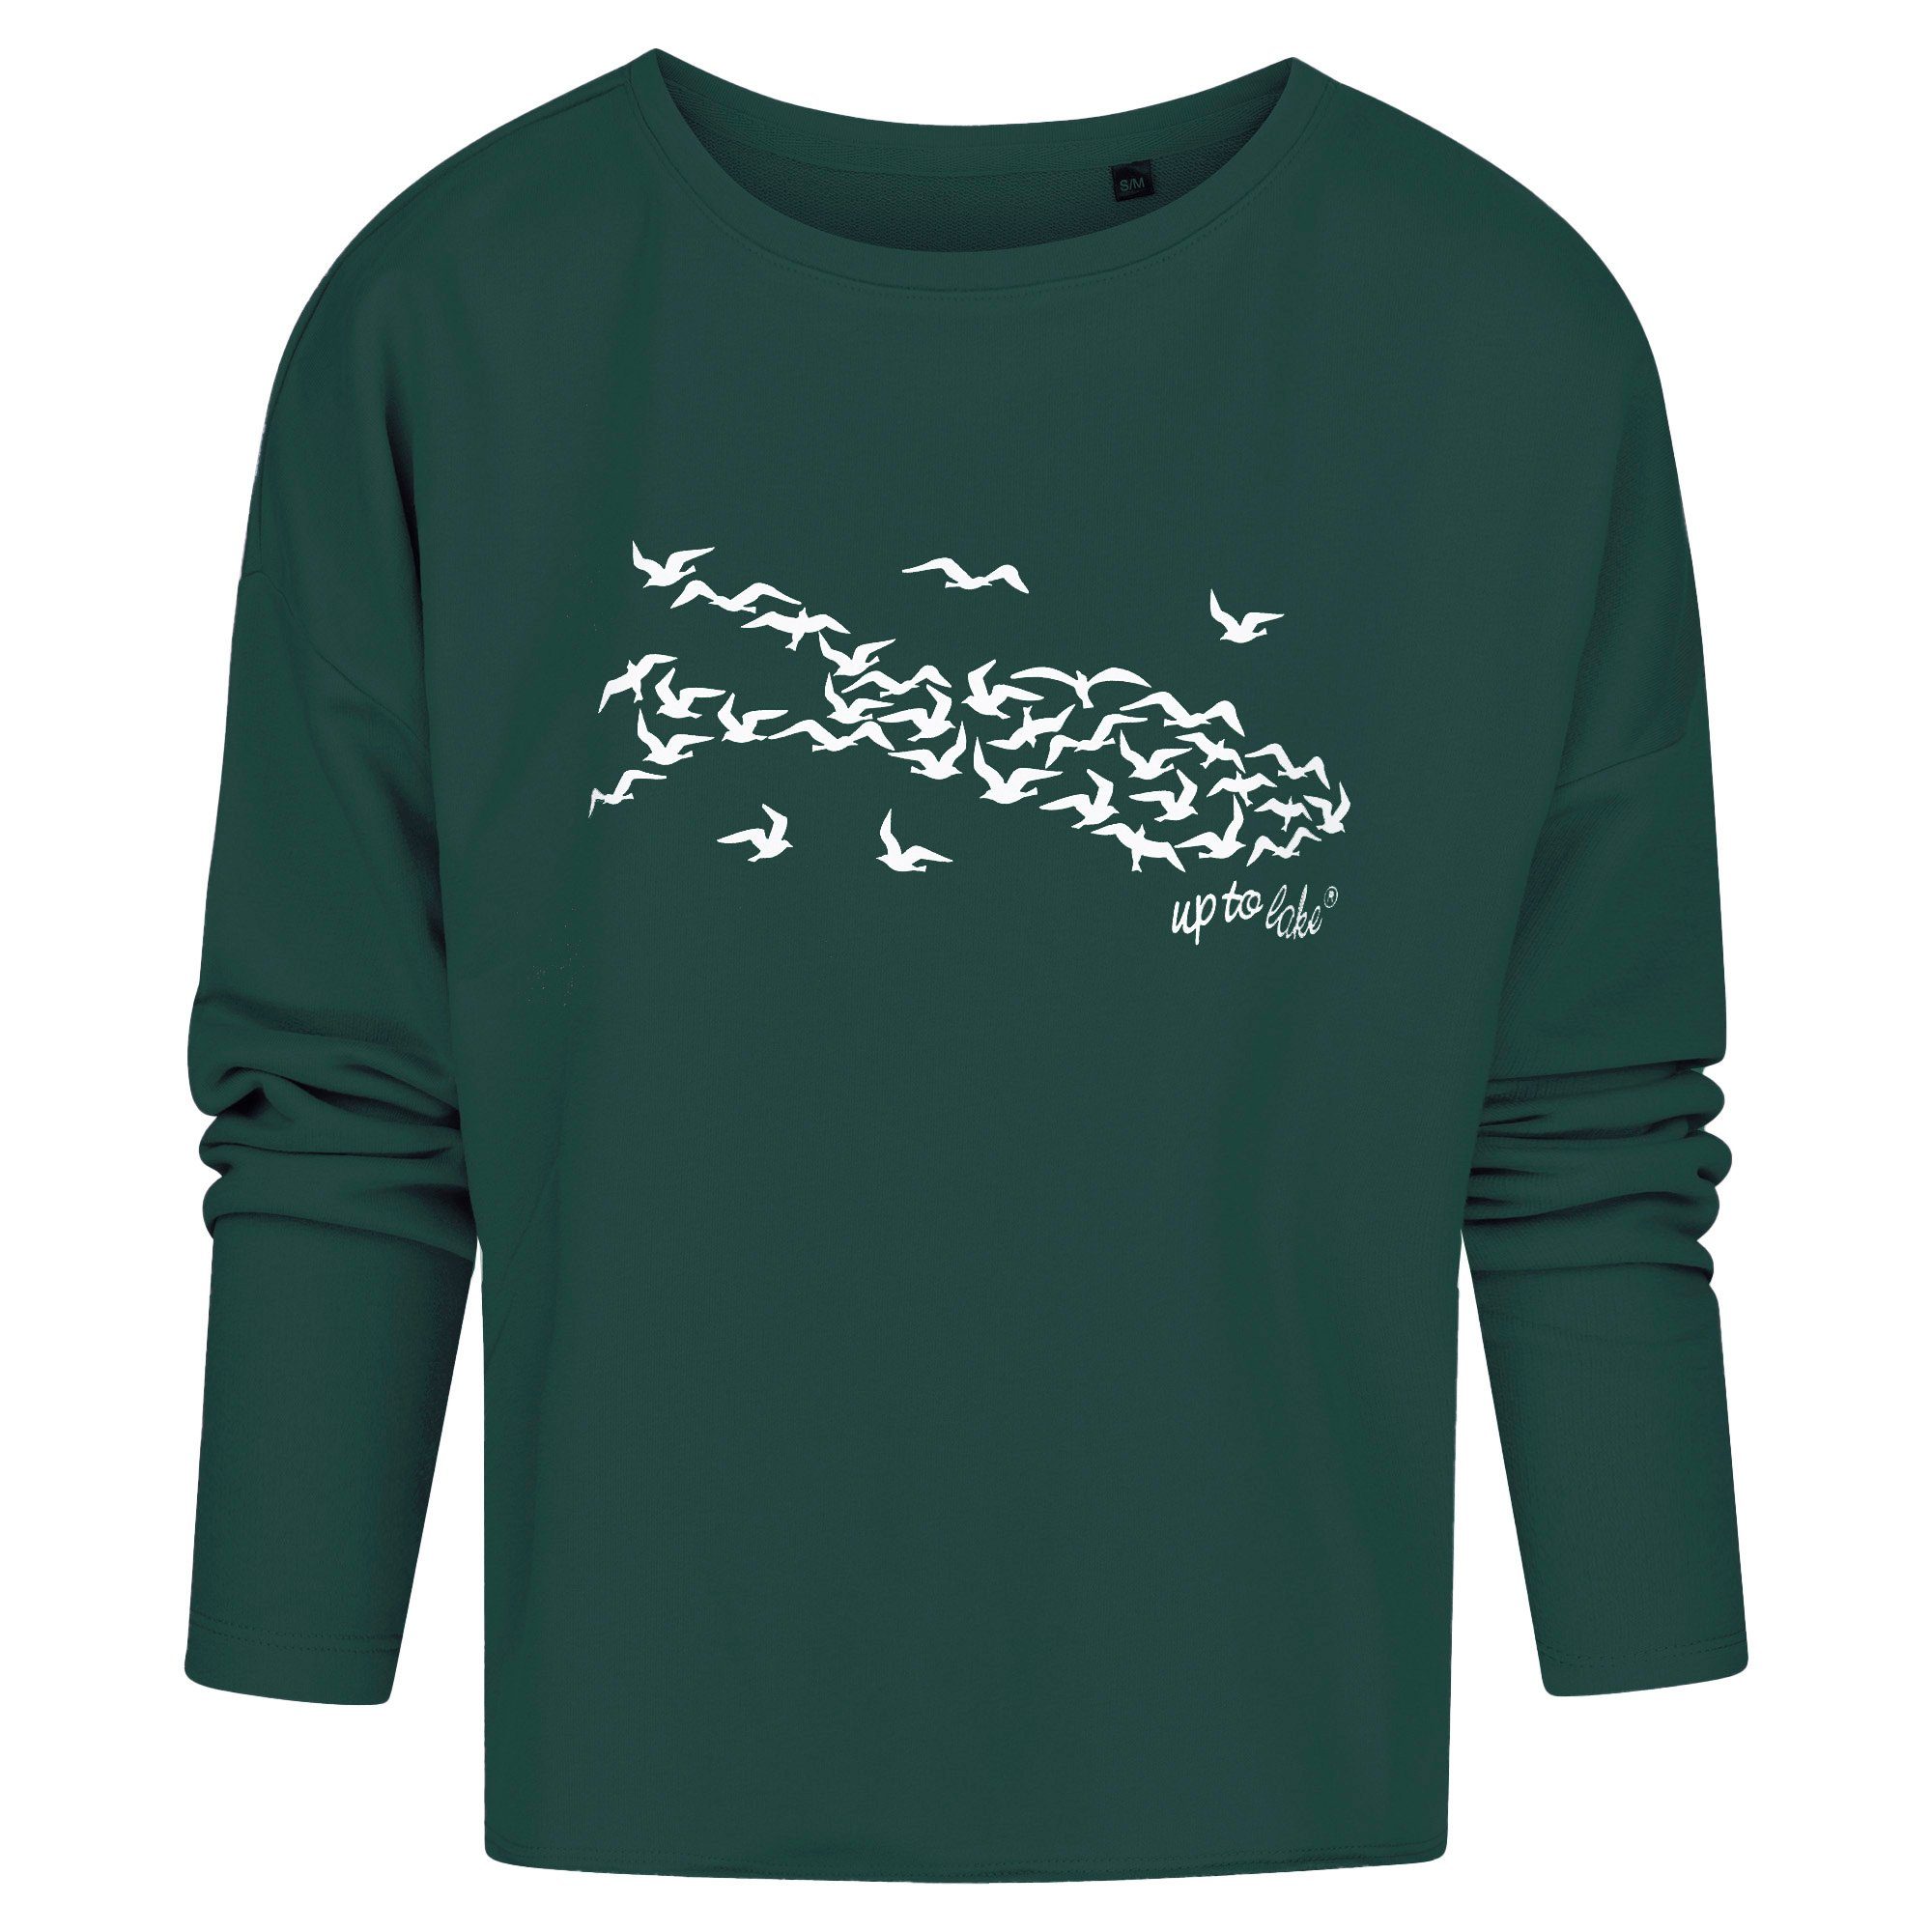 uptolake design Sweatshirt für "Mövensee-Bodensee" weichem Grün/Weiß Damen Design aus Baumwollstoff mit